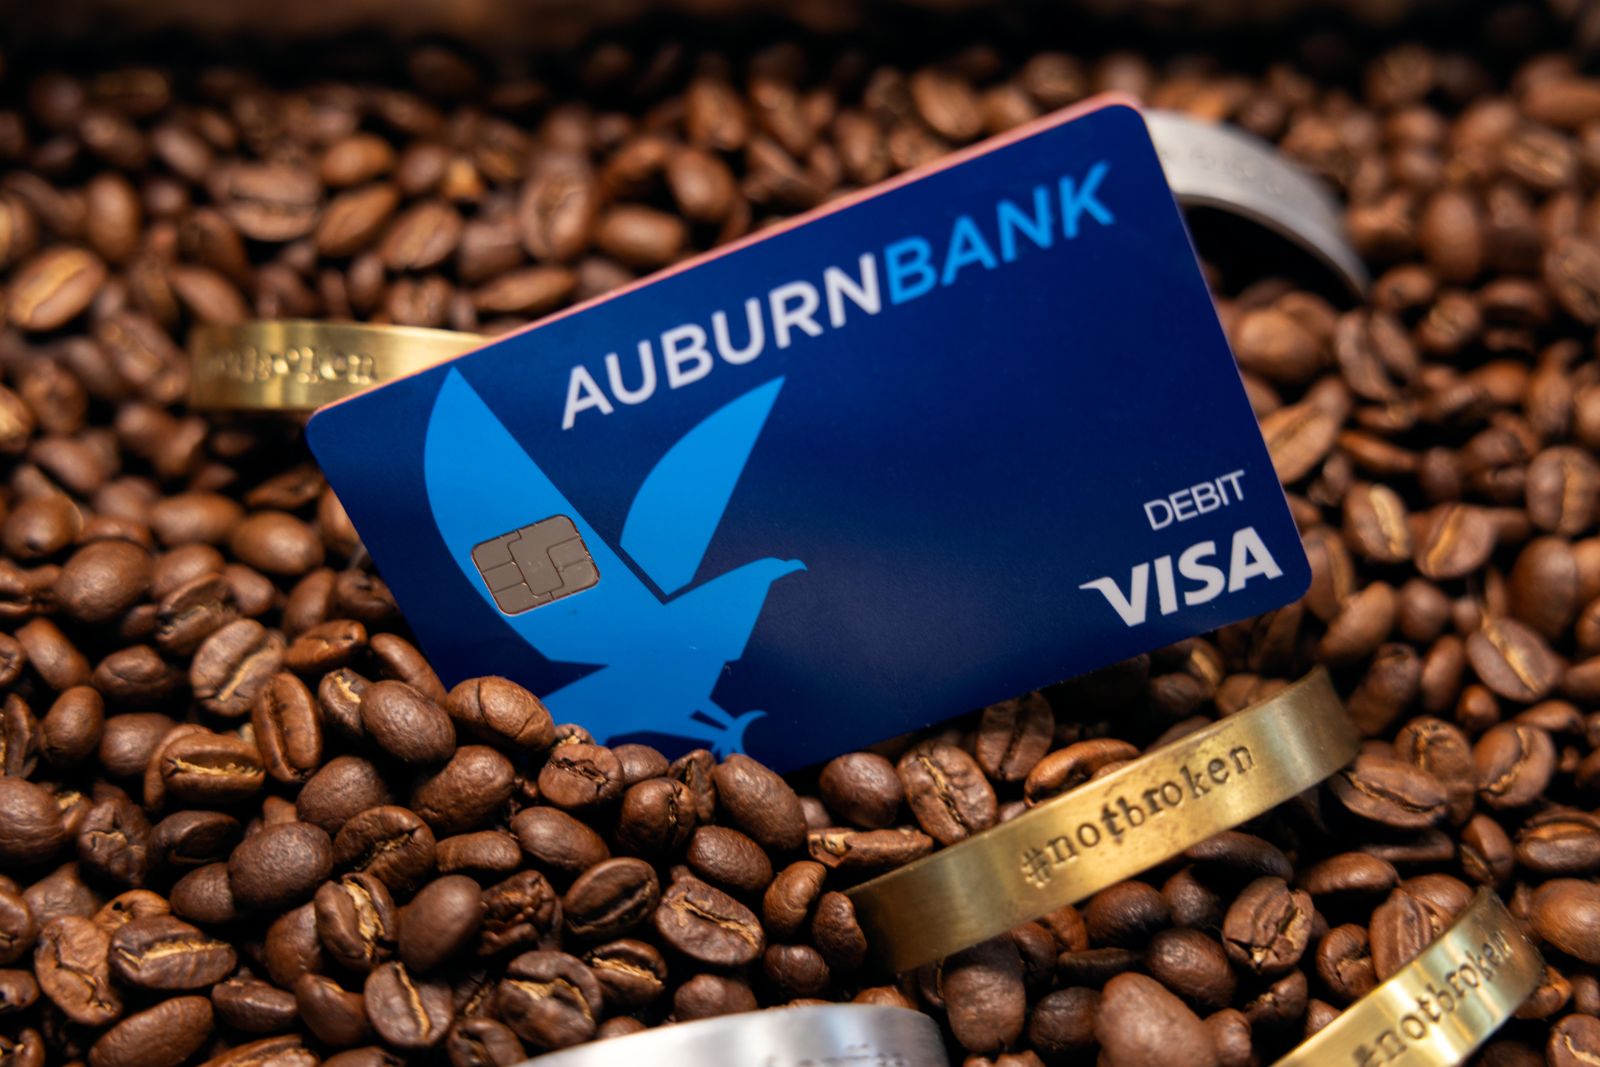 AuburnBank debit card in coffee beans